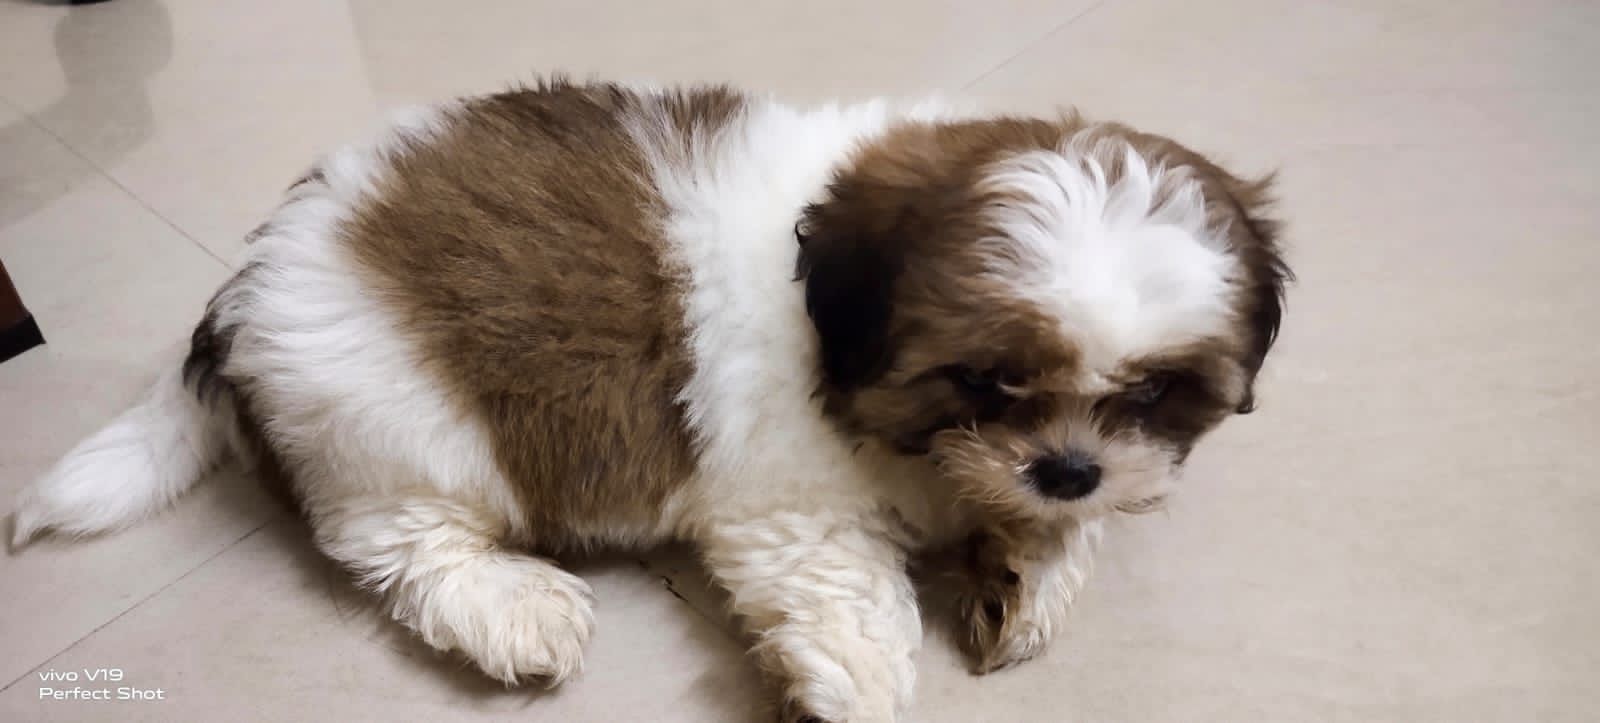 Shih-tzu male puppy